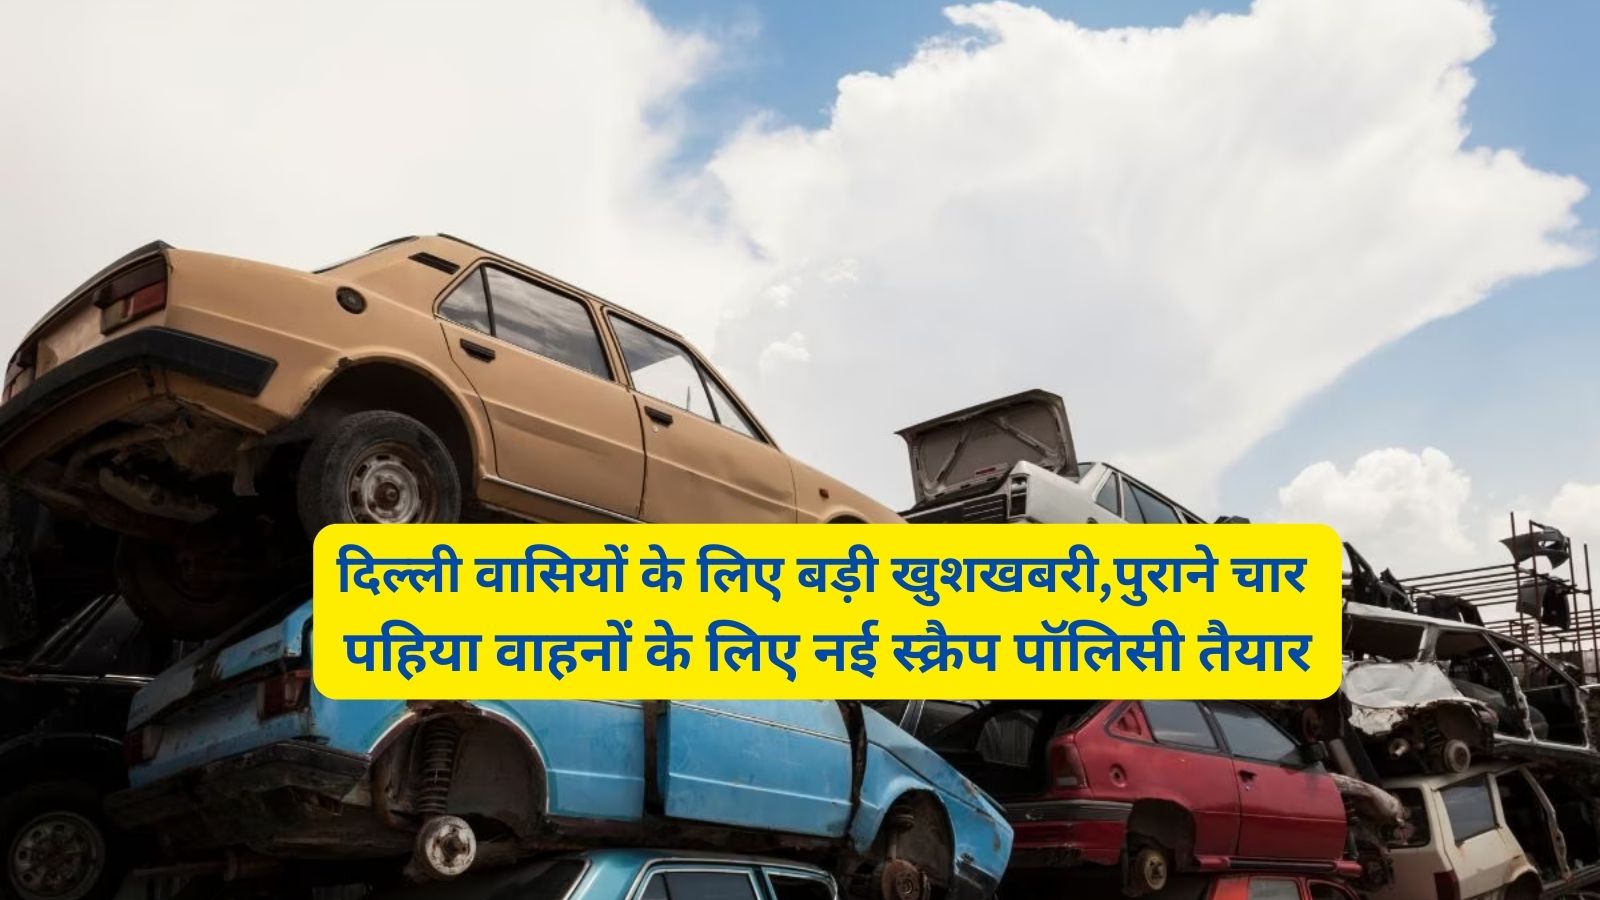 New Scrap Policy: दिल्ली वासियों के लिए बड़ी खुशखबरी,पुराने चार पहिया वाहनों के लिए नई स्क्रैप पॉलिसी तैयार